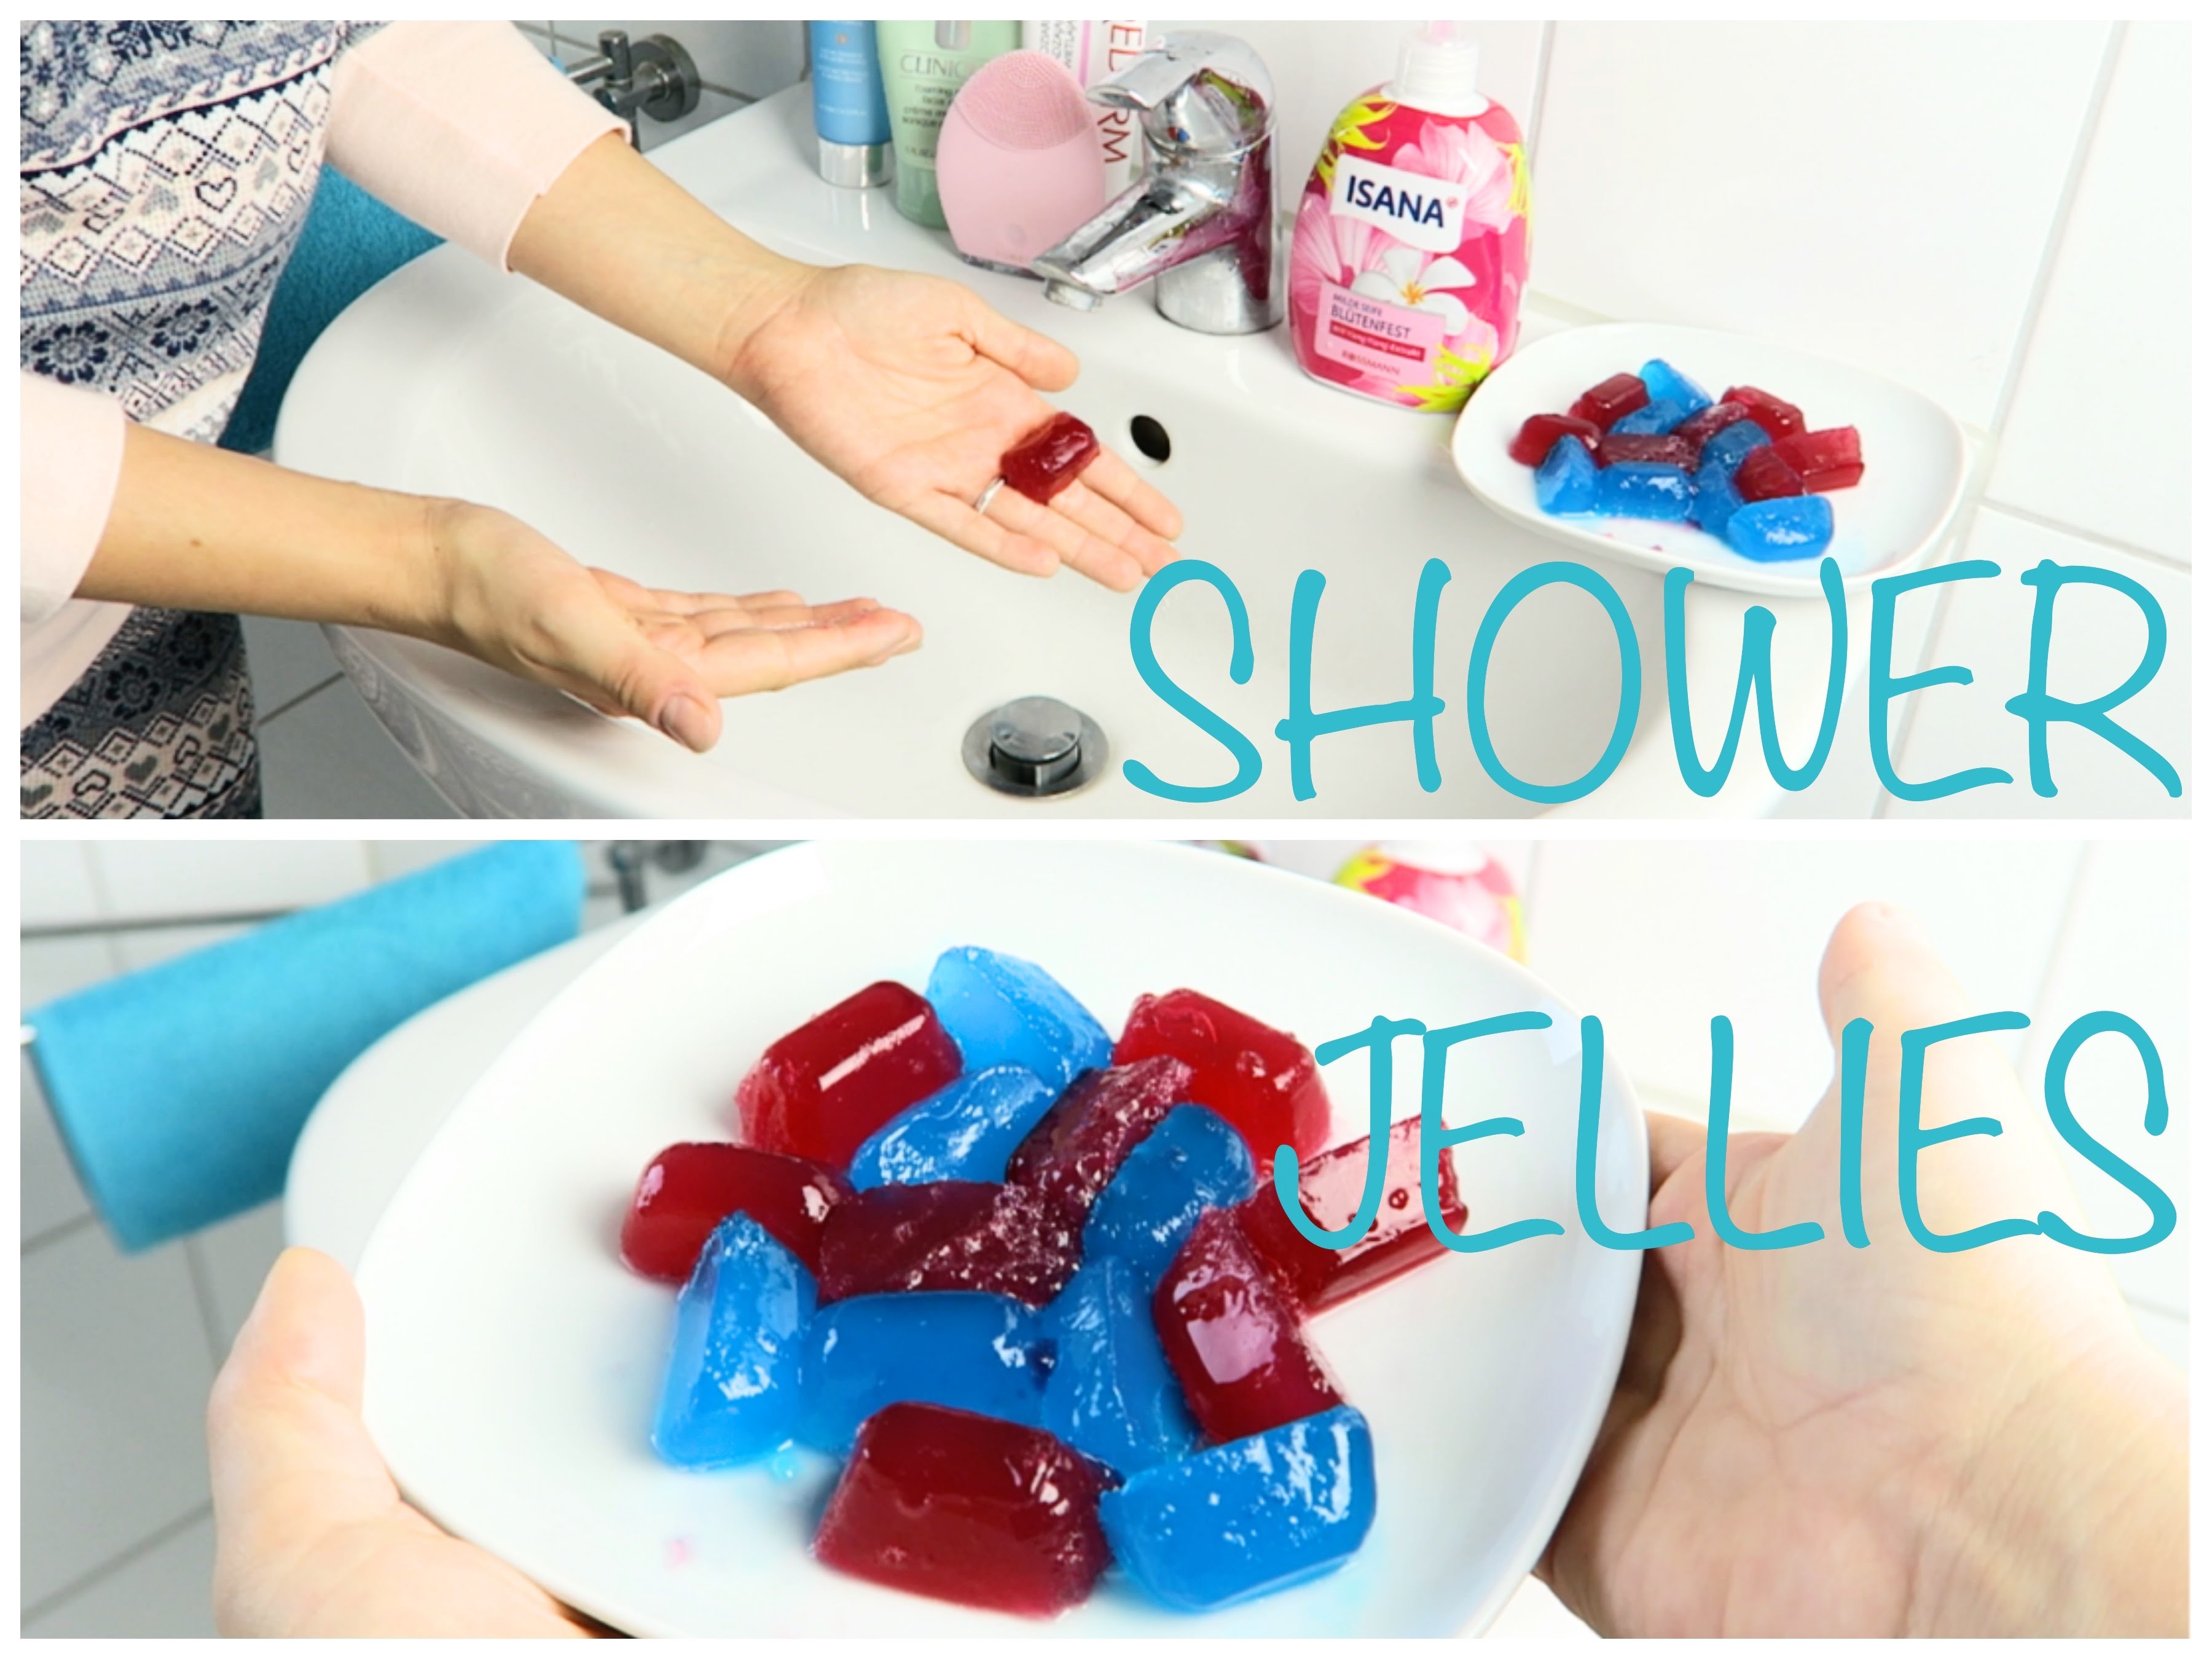 Shower jellies czyli zelki pod prysznic. Kosmetyczne DIY #1